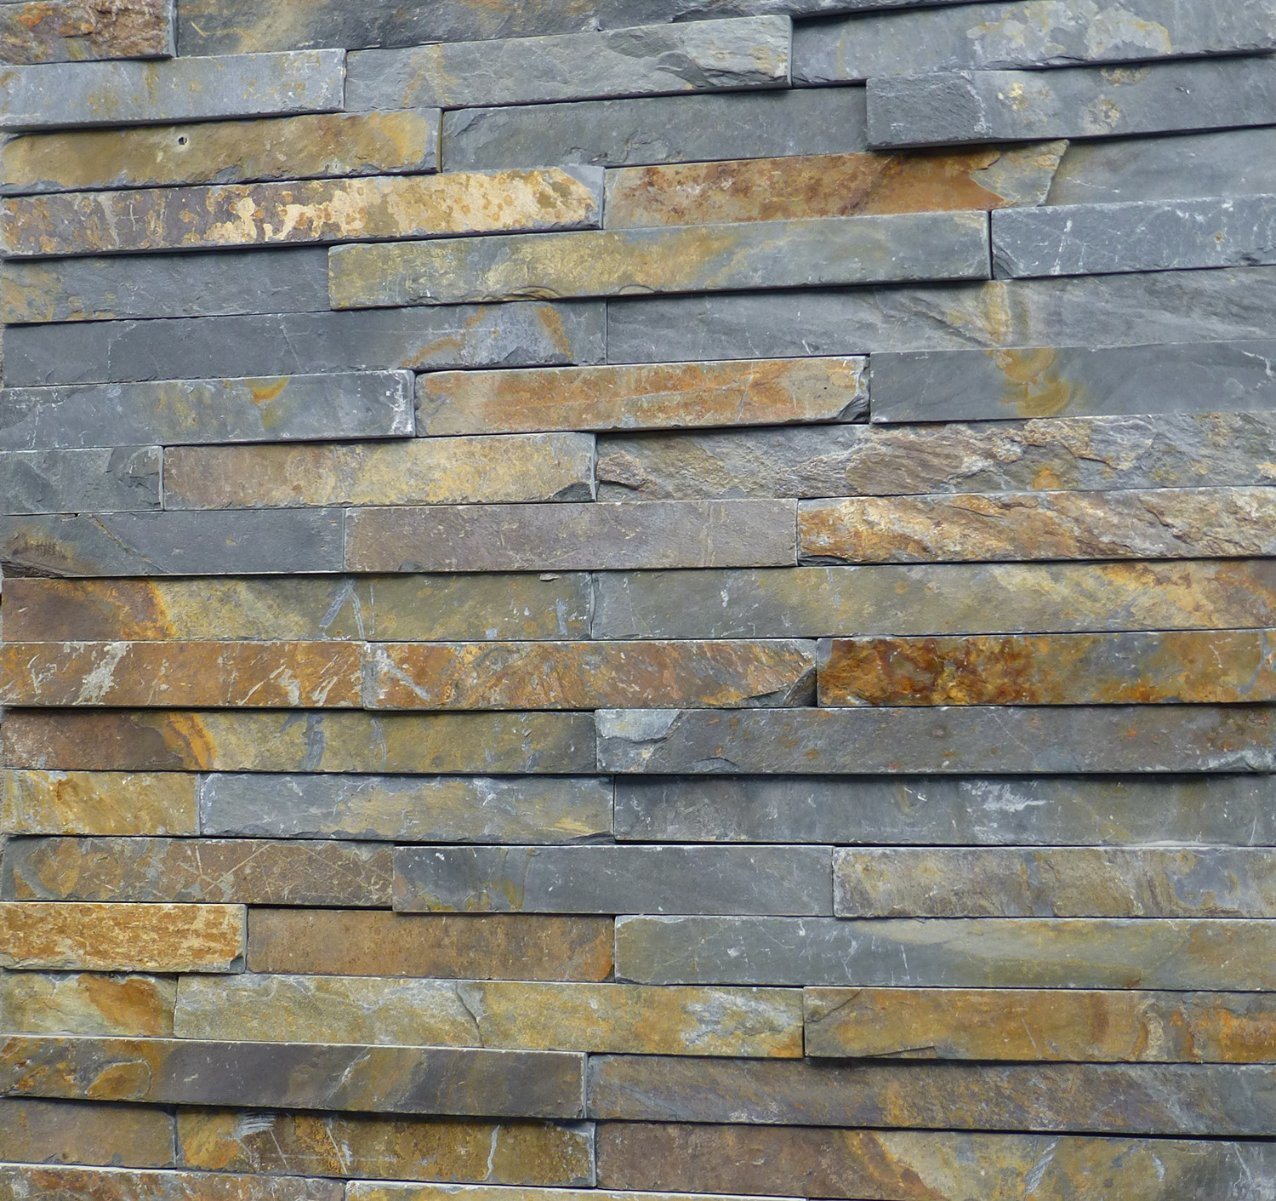 stone veneer wall cladding -surya wall texture